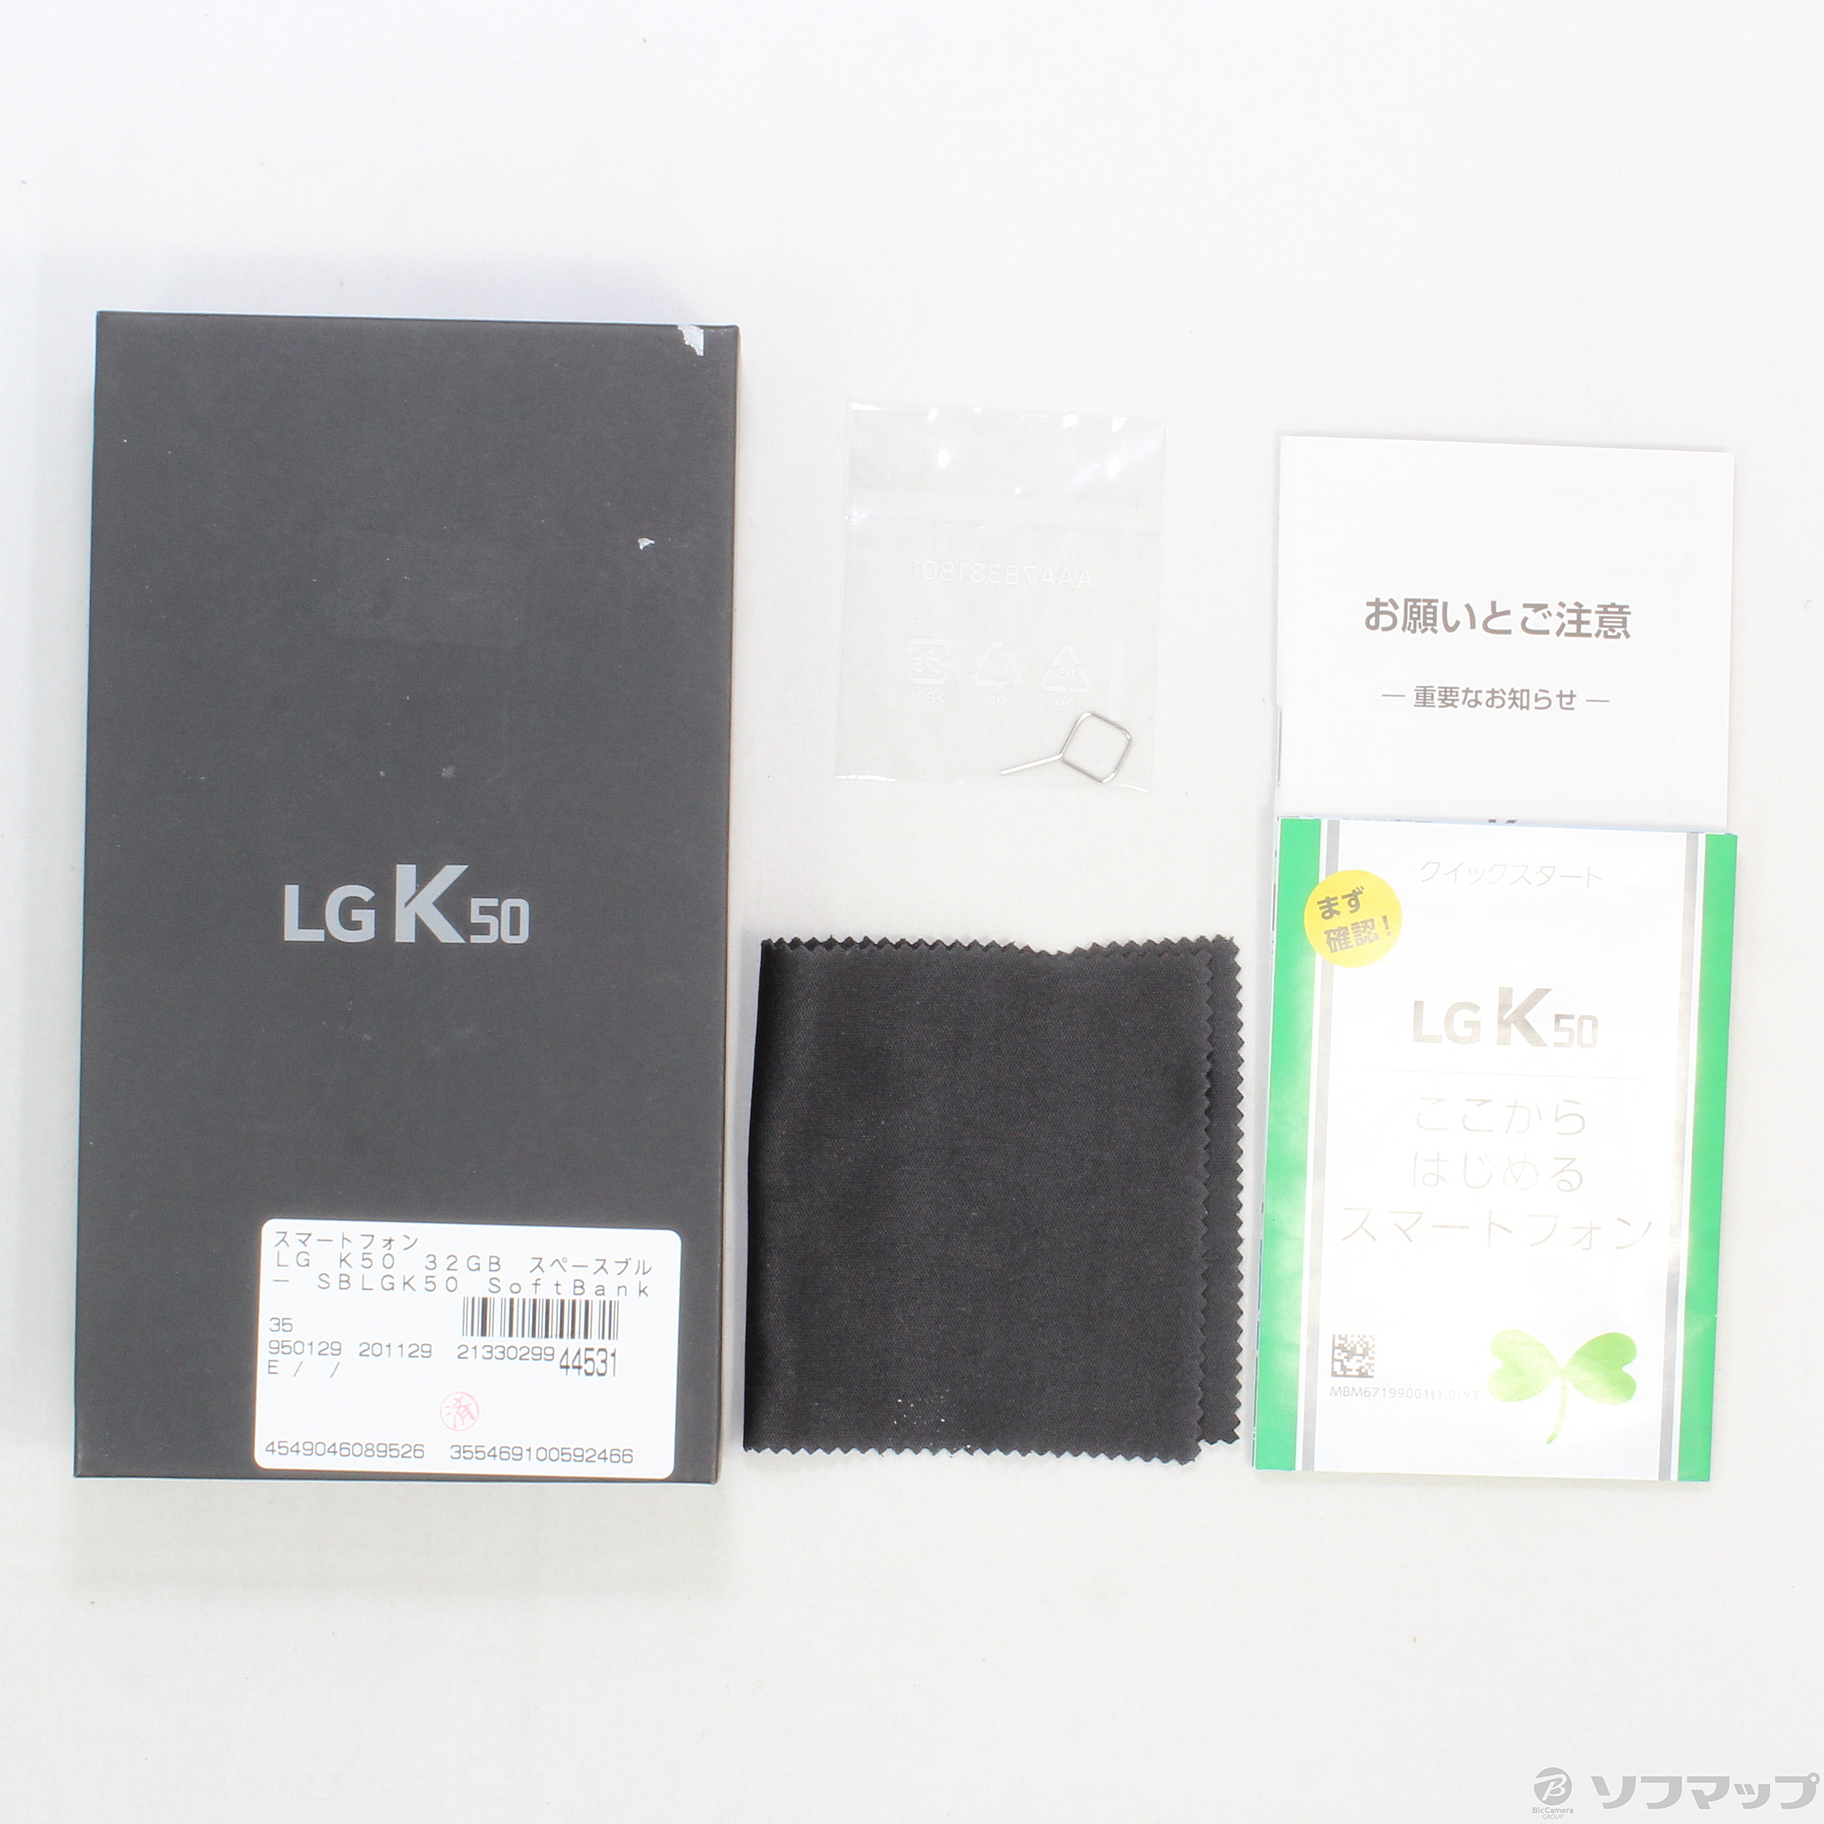 中古】LG K50 32GB スペースブルー SBLGK50 SoftBank [2133029944531